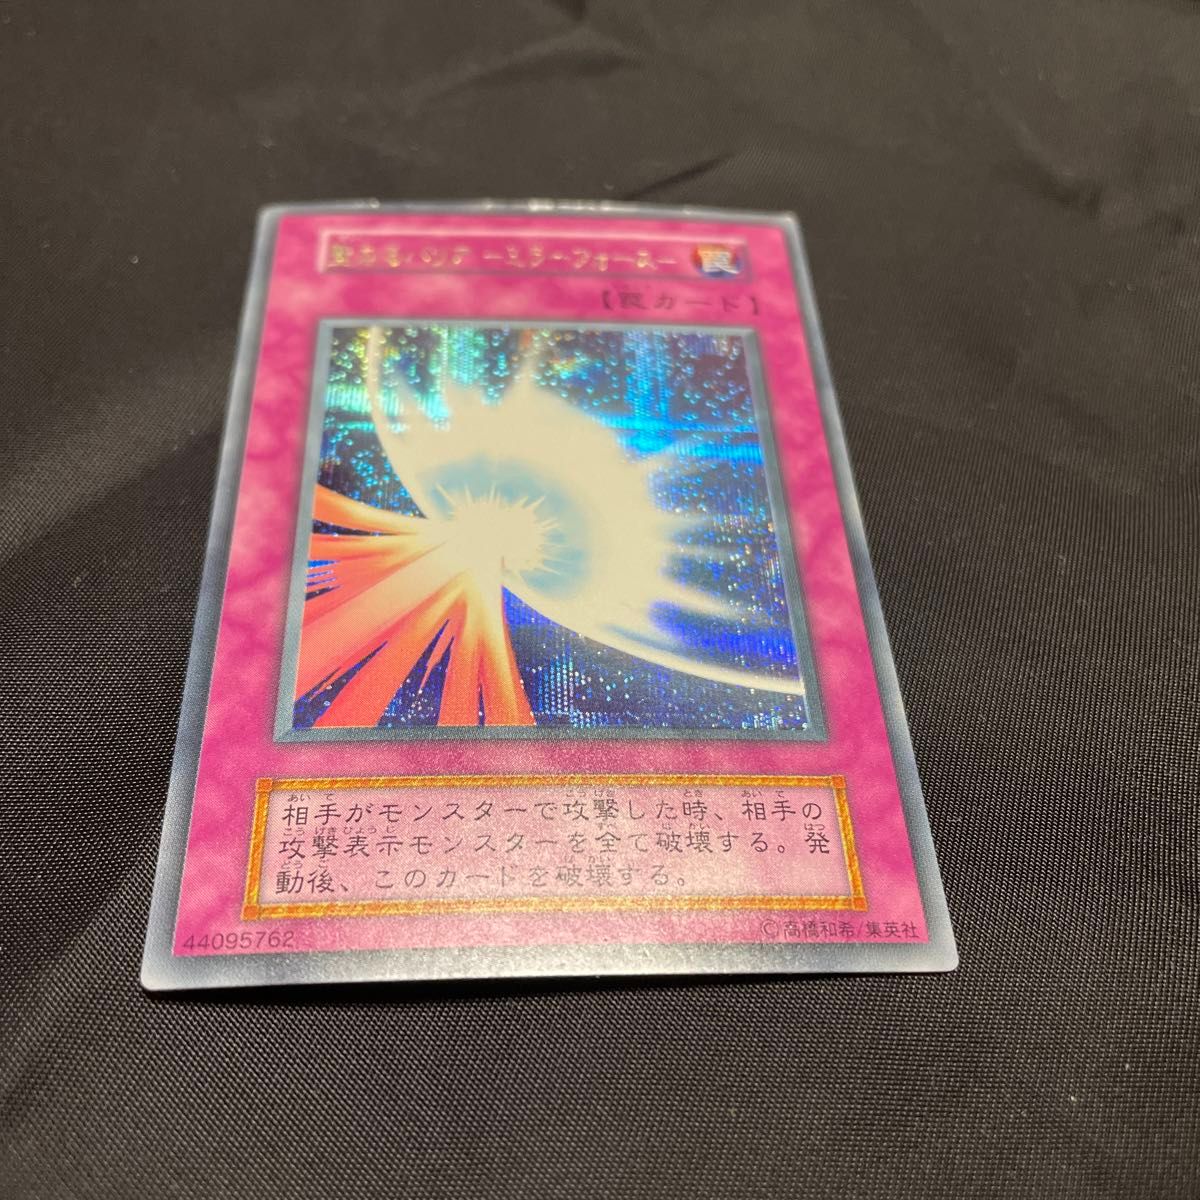 遊戯王カード 初期 聖なるバリアミラーフォース 二重文字エラー 傷や汚れあり エラーカード